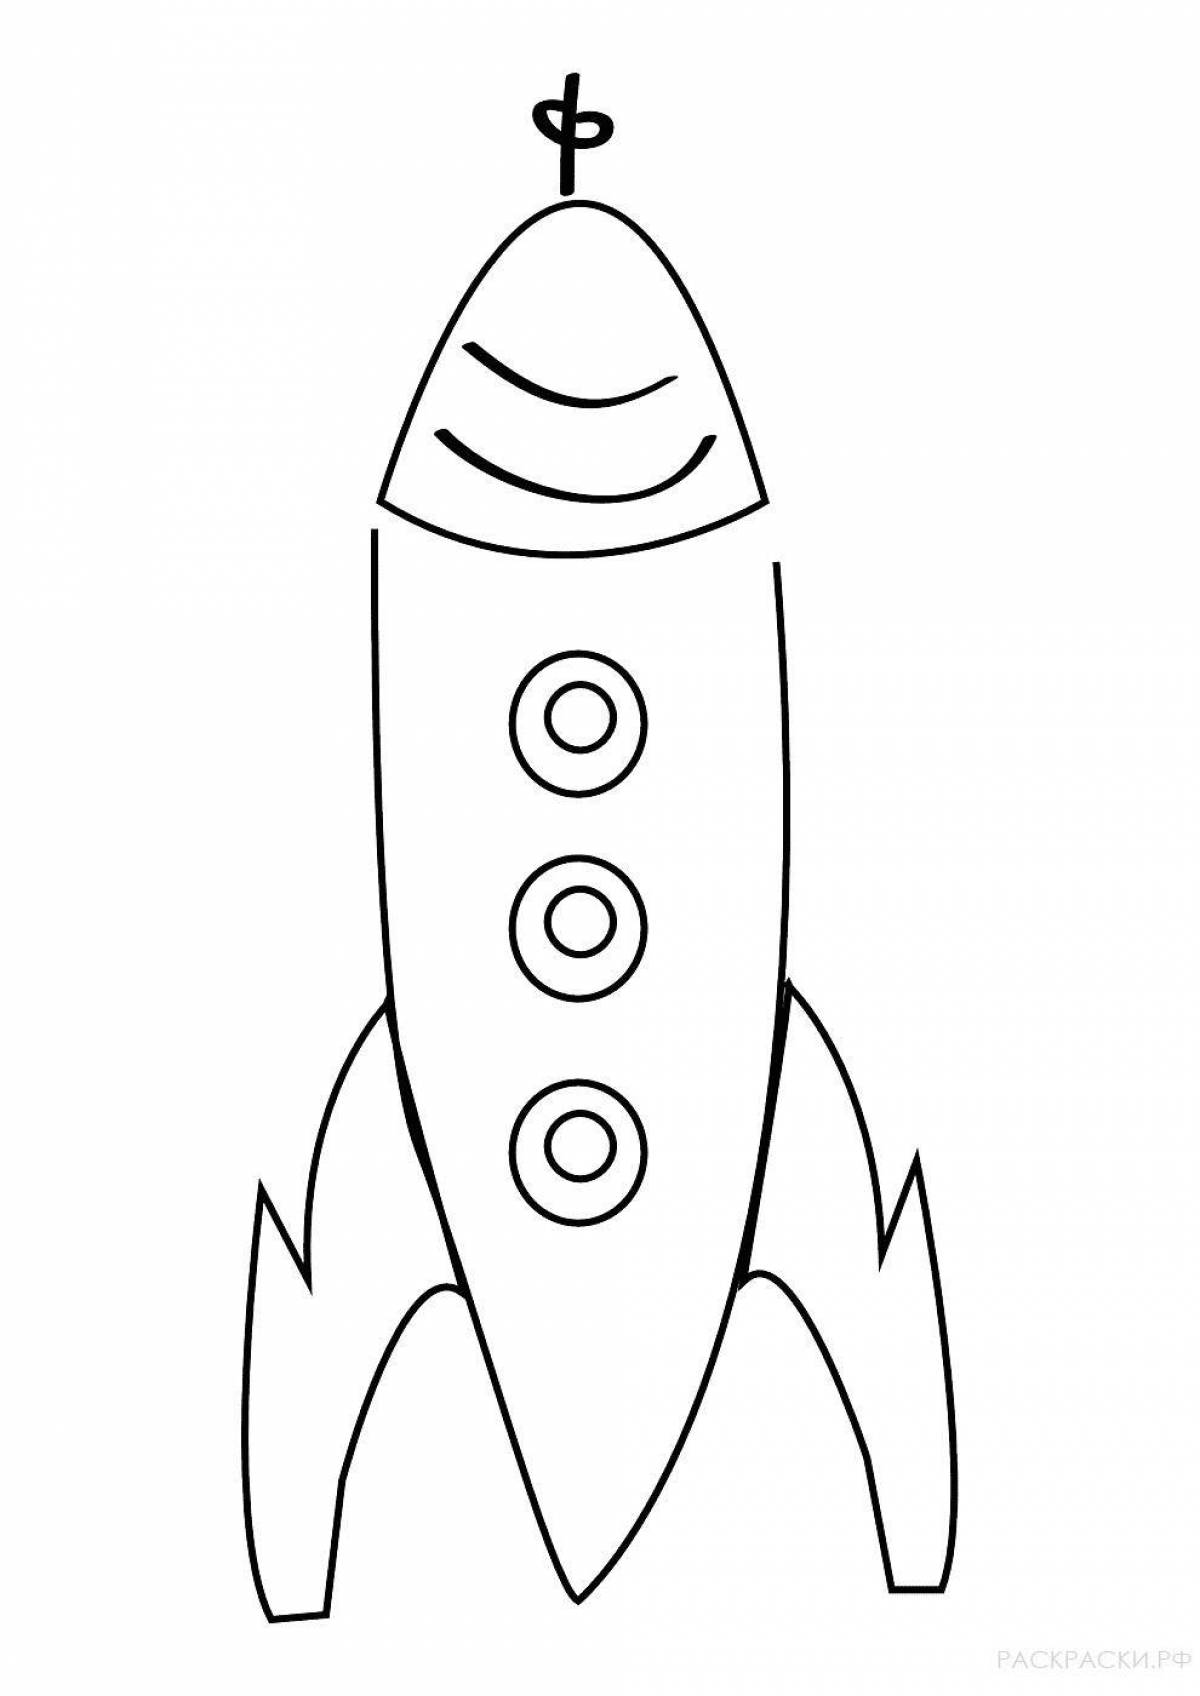 Fun rocket drawing for kids